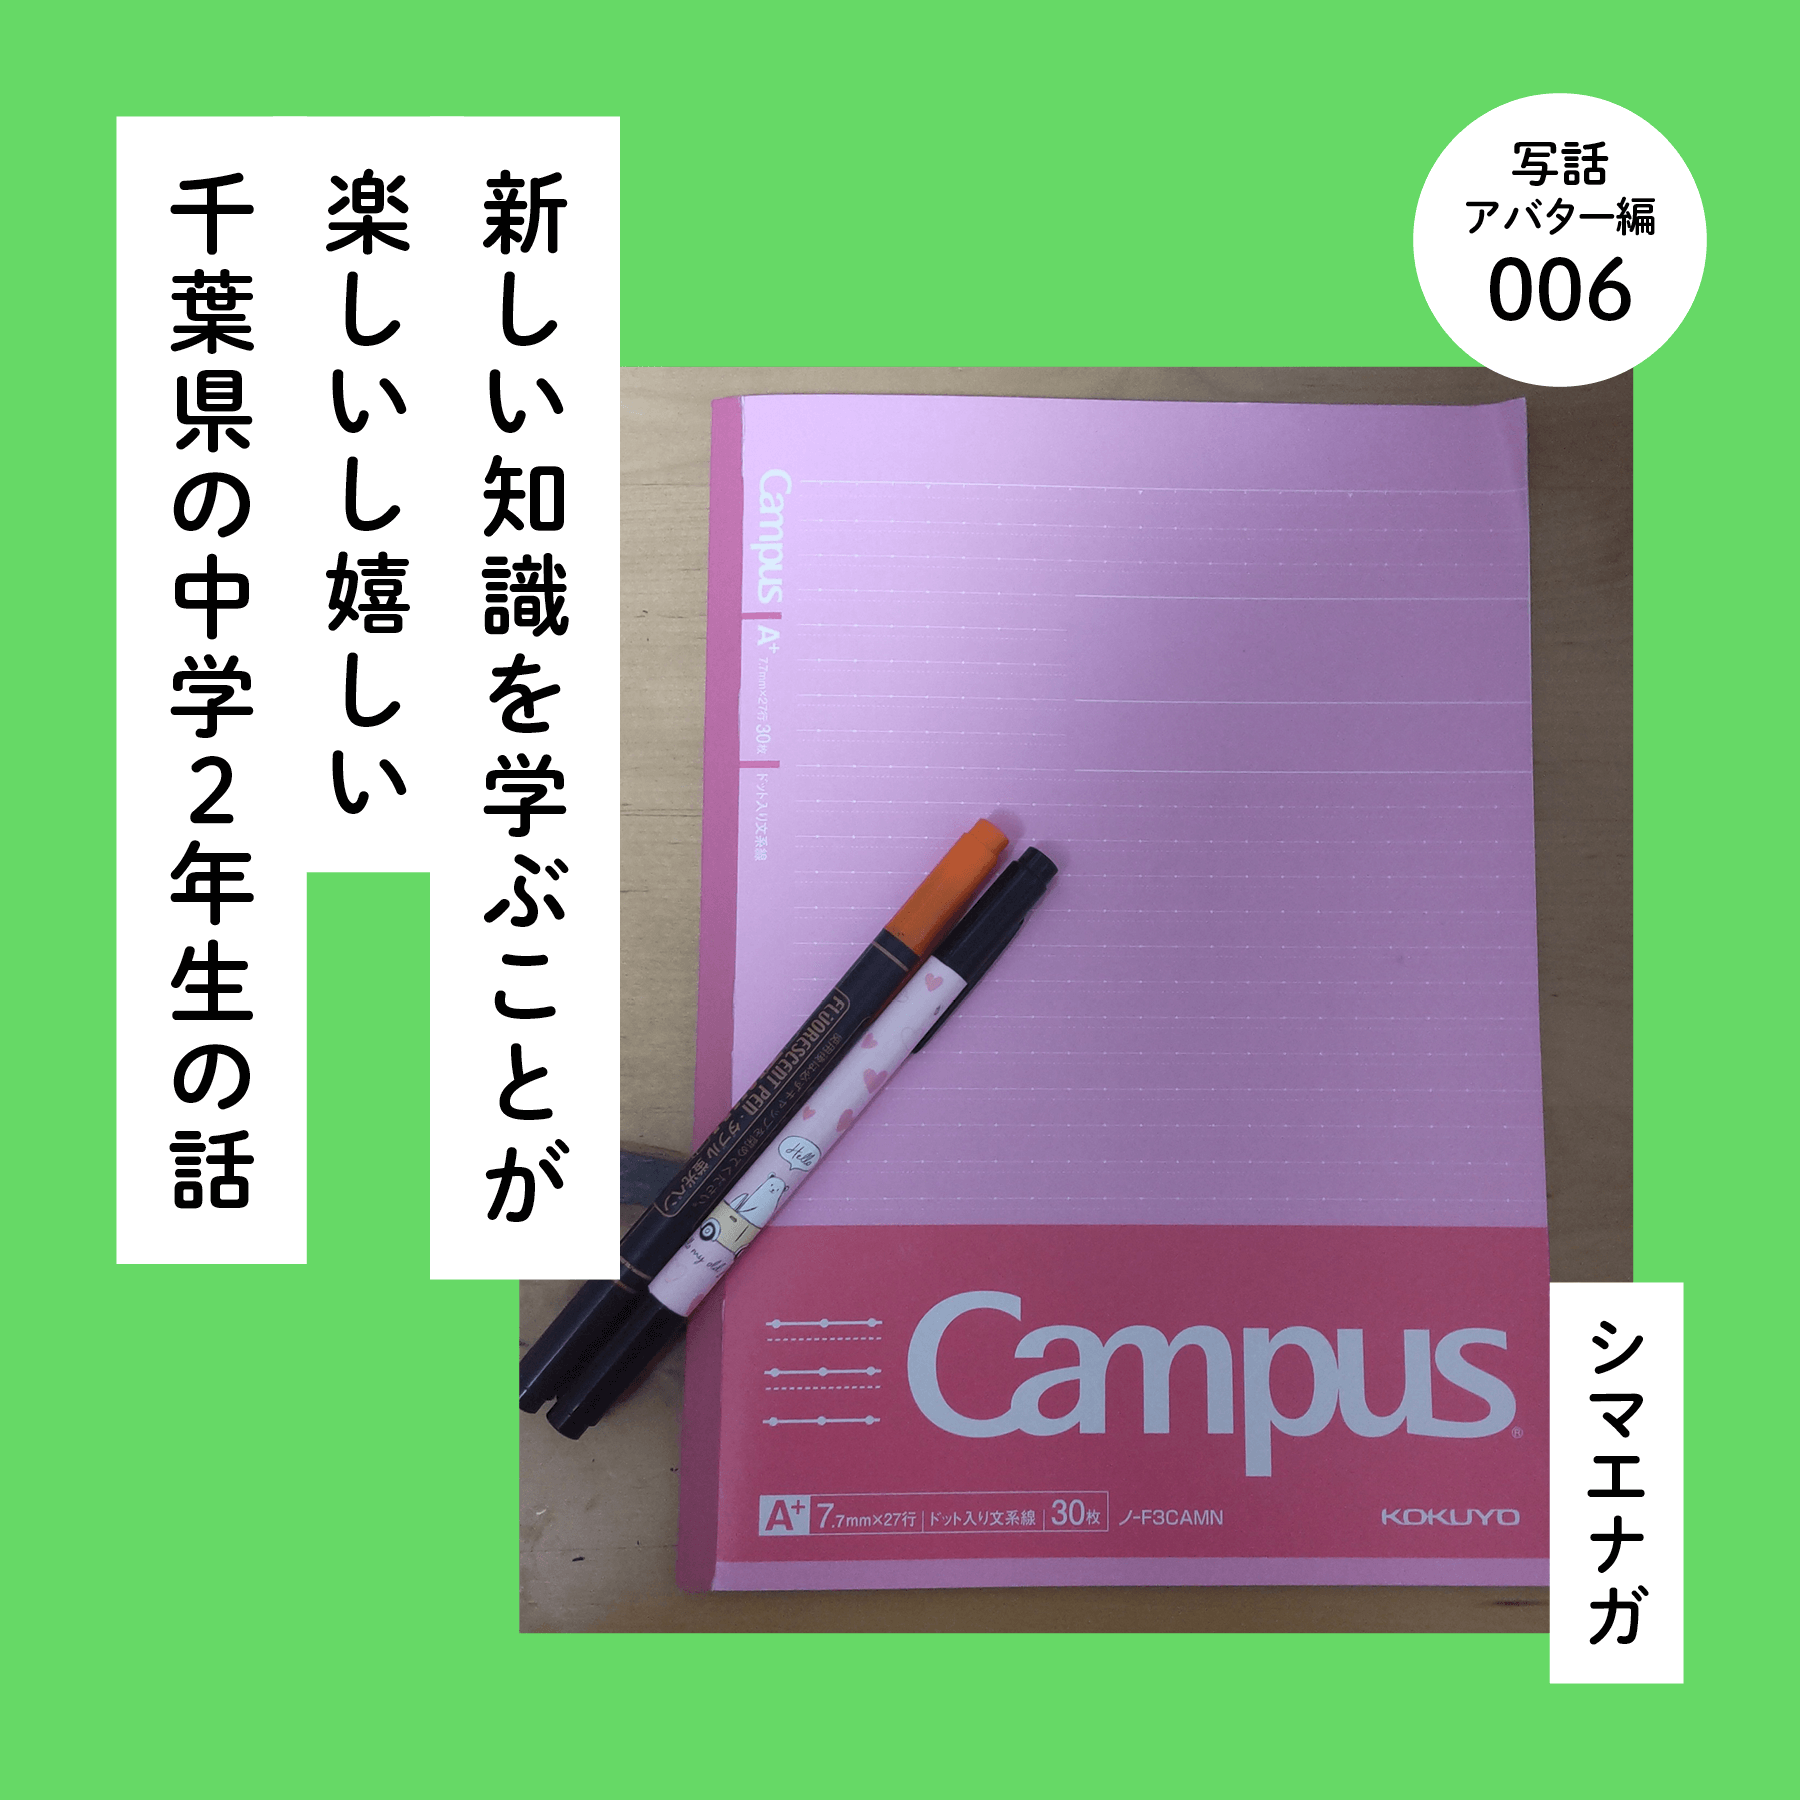 【写話アバター編】新しい知識を学ぶことが楽しいし嬉しい千葉県の中学２年生の話